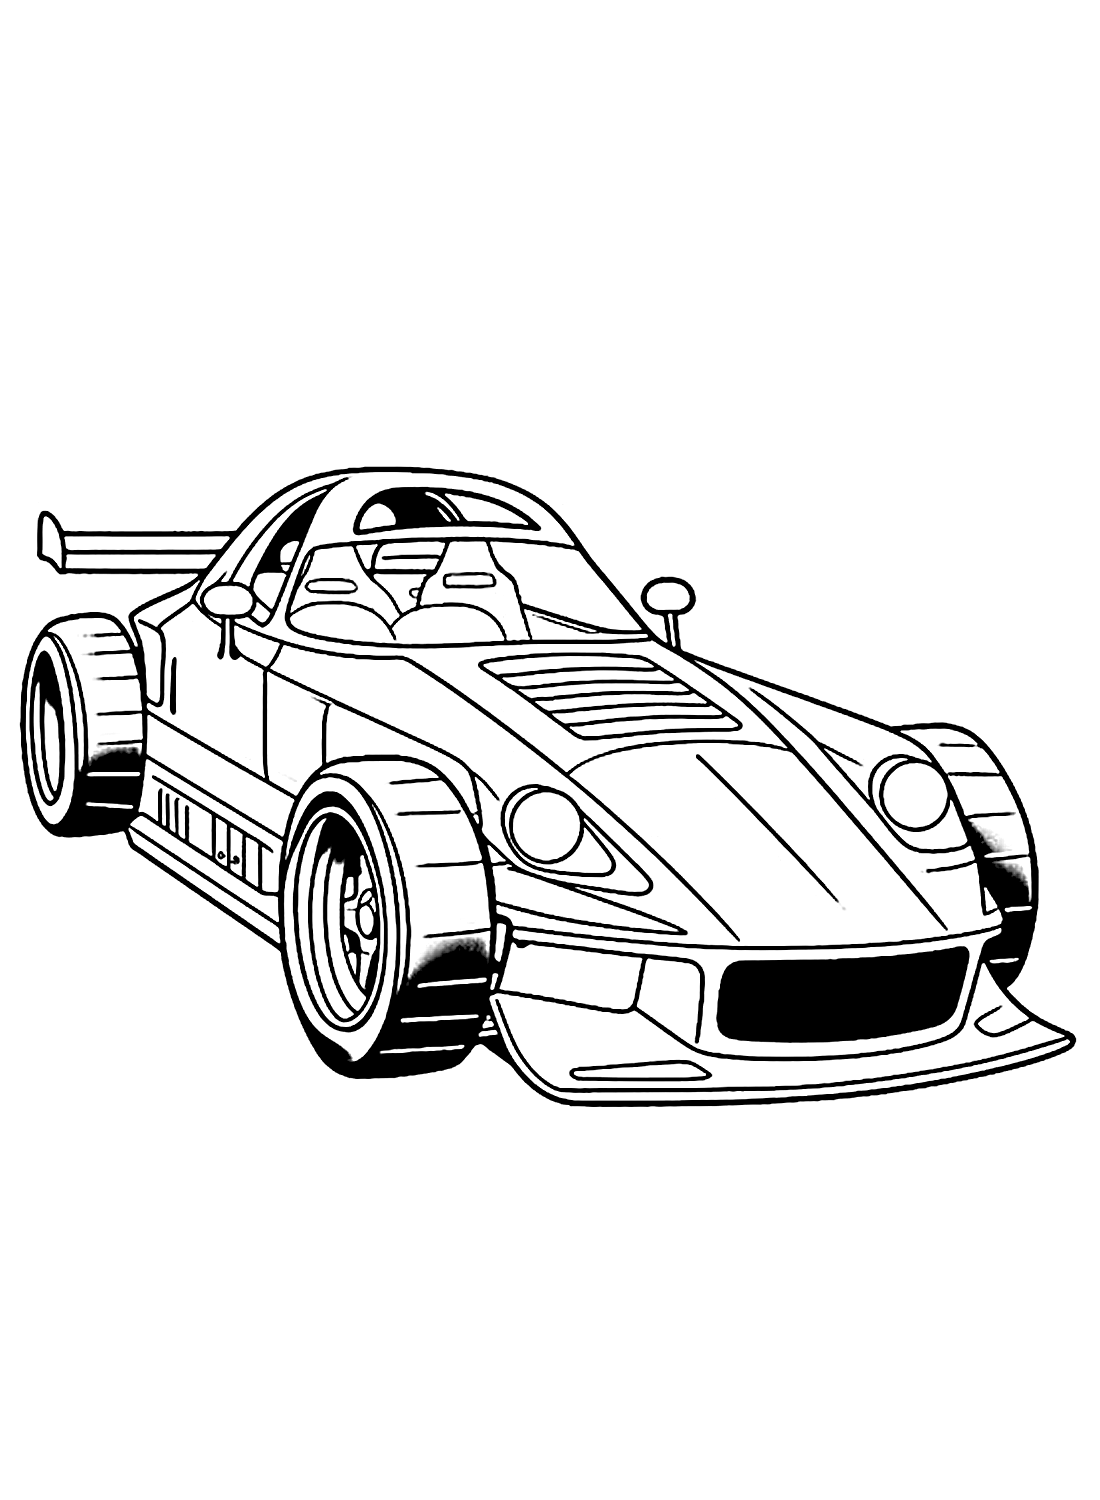 Раскраски гоночных машин для детей из журнала Racing Car